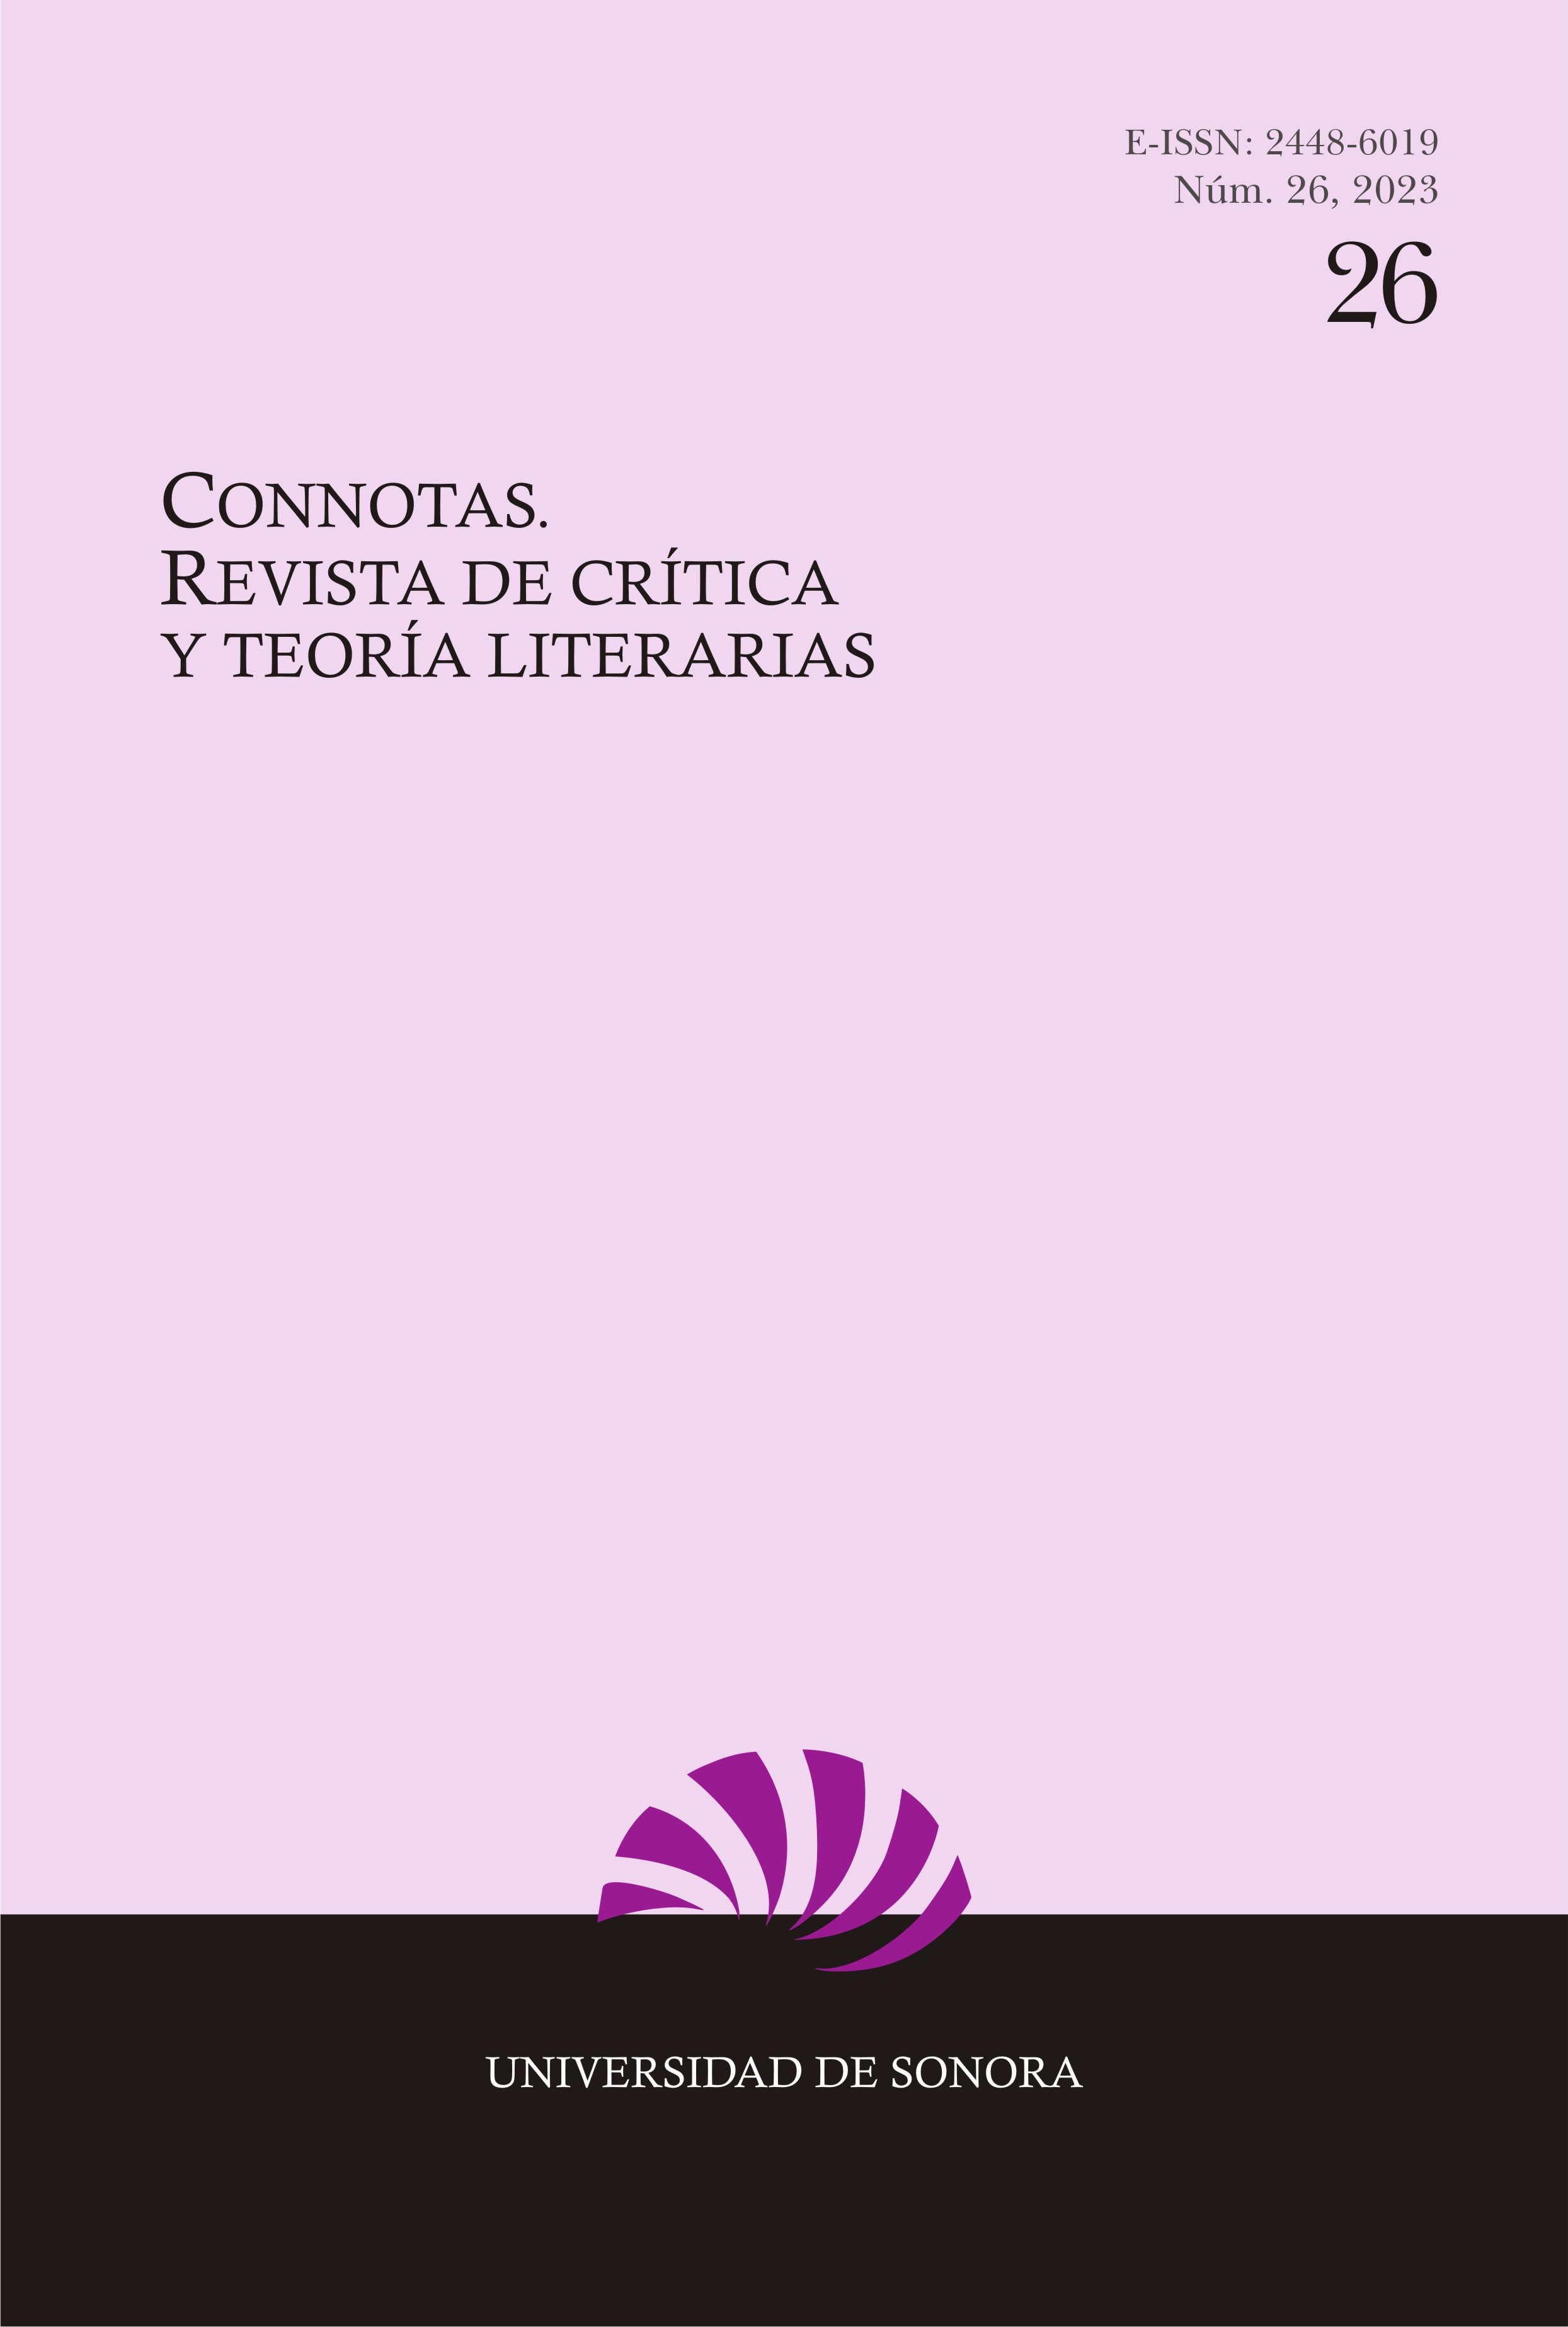 					Ver Núm. 26 (2023): Connotas. Revista de crítica y teoría literarias
				